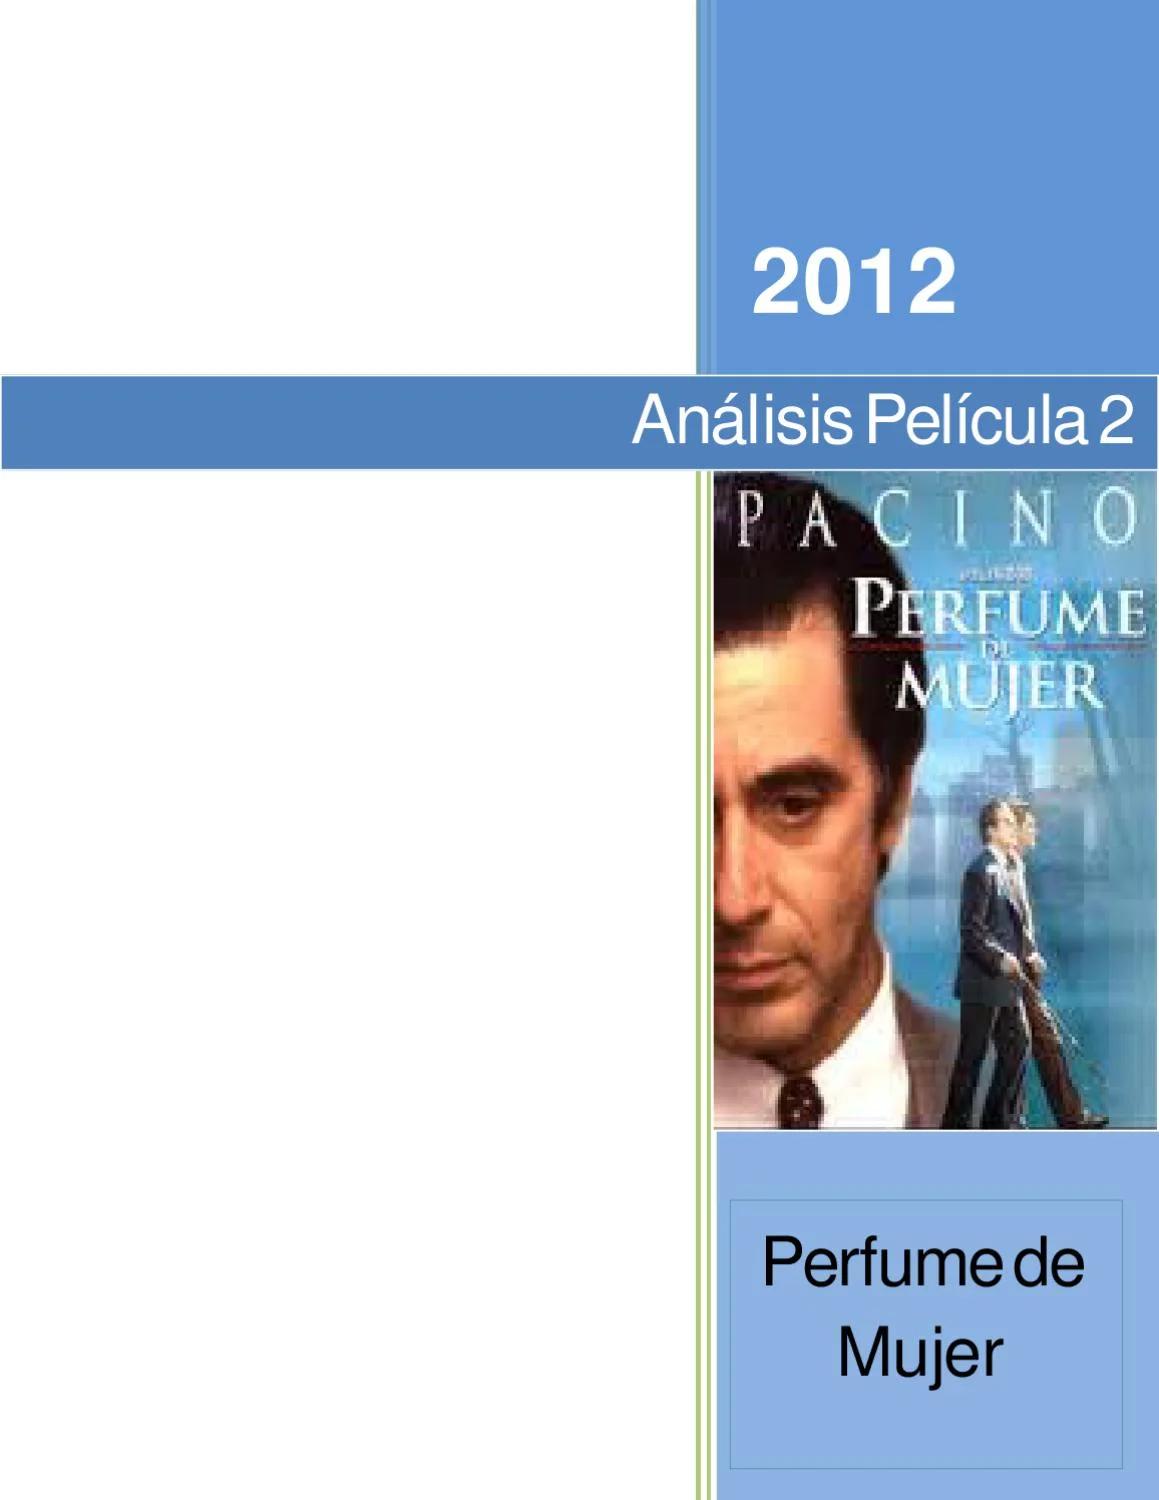 analisis de la pelicula perfume de mujer - Qué defecto físico tiene el personaje de Al Pacino en Perfume de mujer